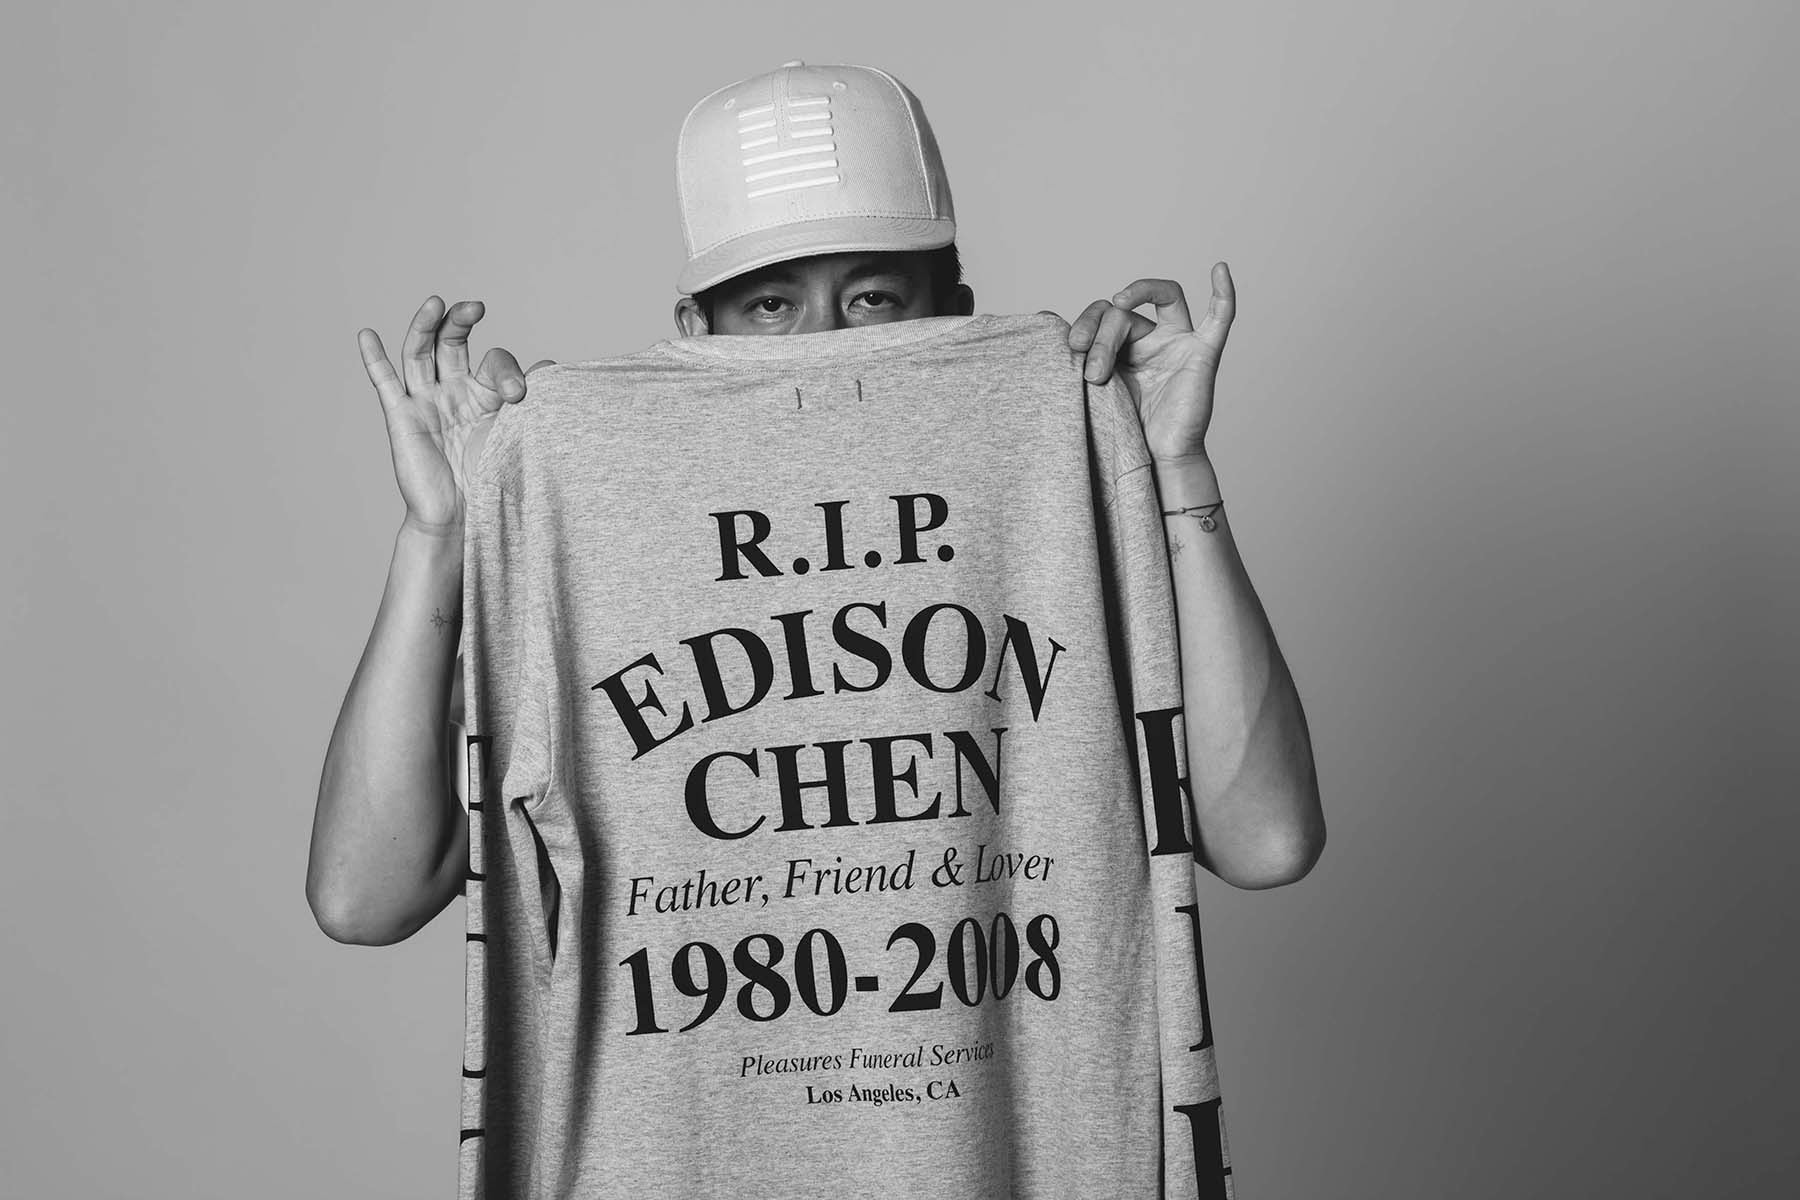 CLOT "EDC Rest In Peace" Campaign